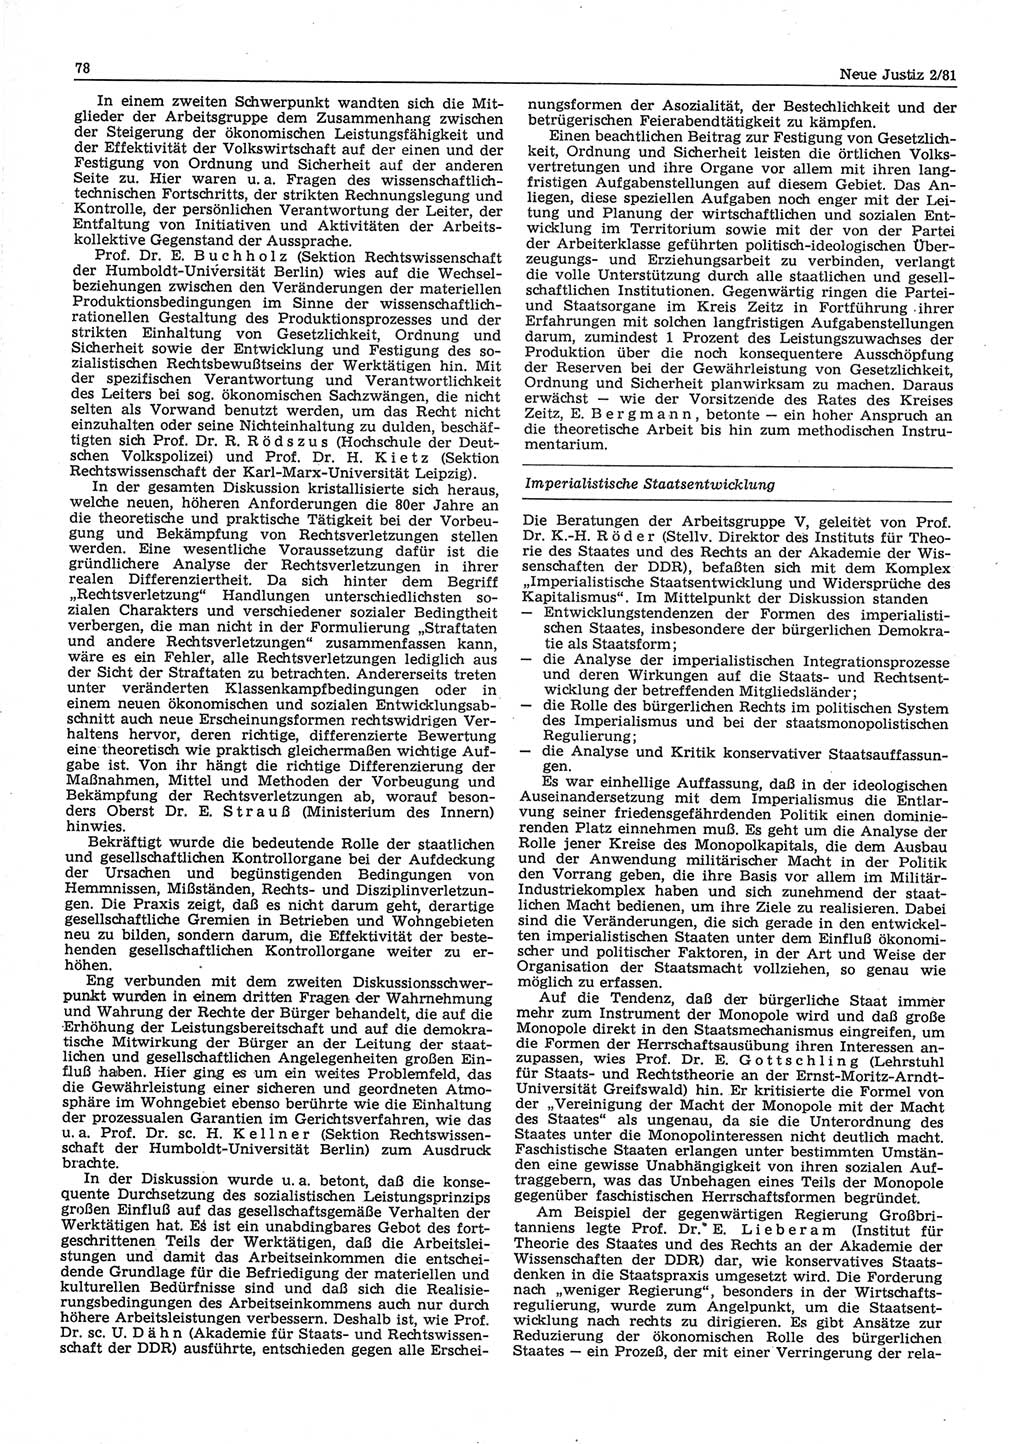 Neue Justiz (NJ), Zeitschrift für sozialistisches Recht und Gesetzlichkeit [Deutsche Demokratische Republik (DDR)], 35. Jahrgang 1981, Seite 78 (NJ DDR 1981, S. 78)